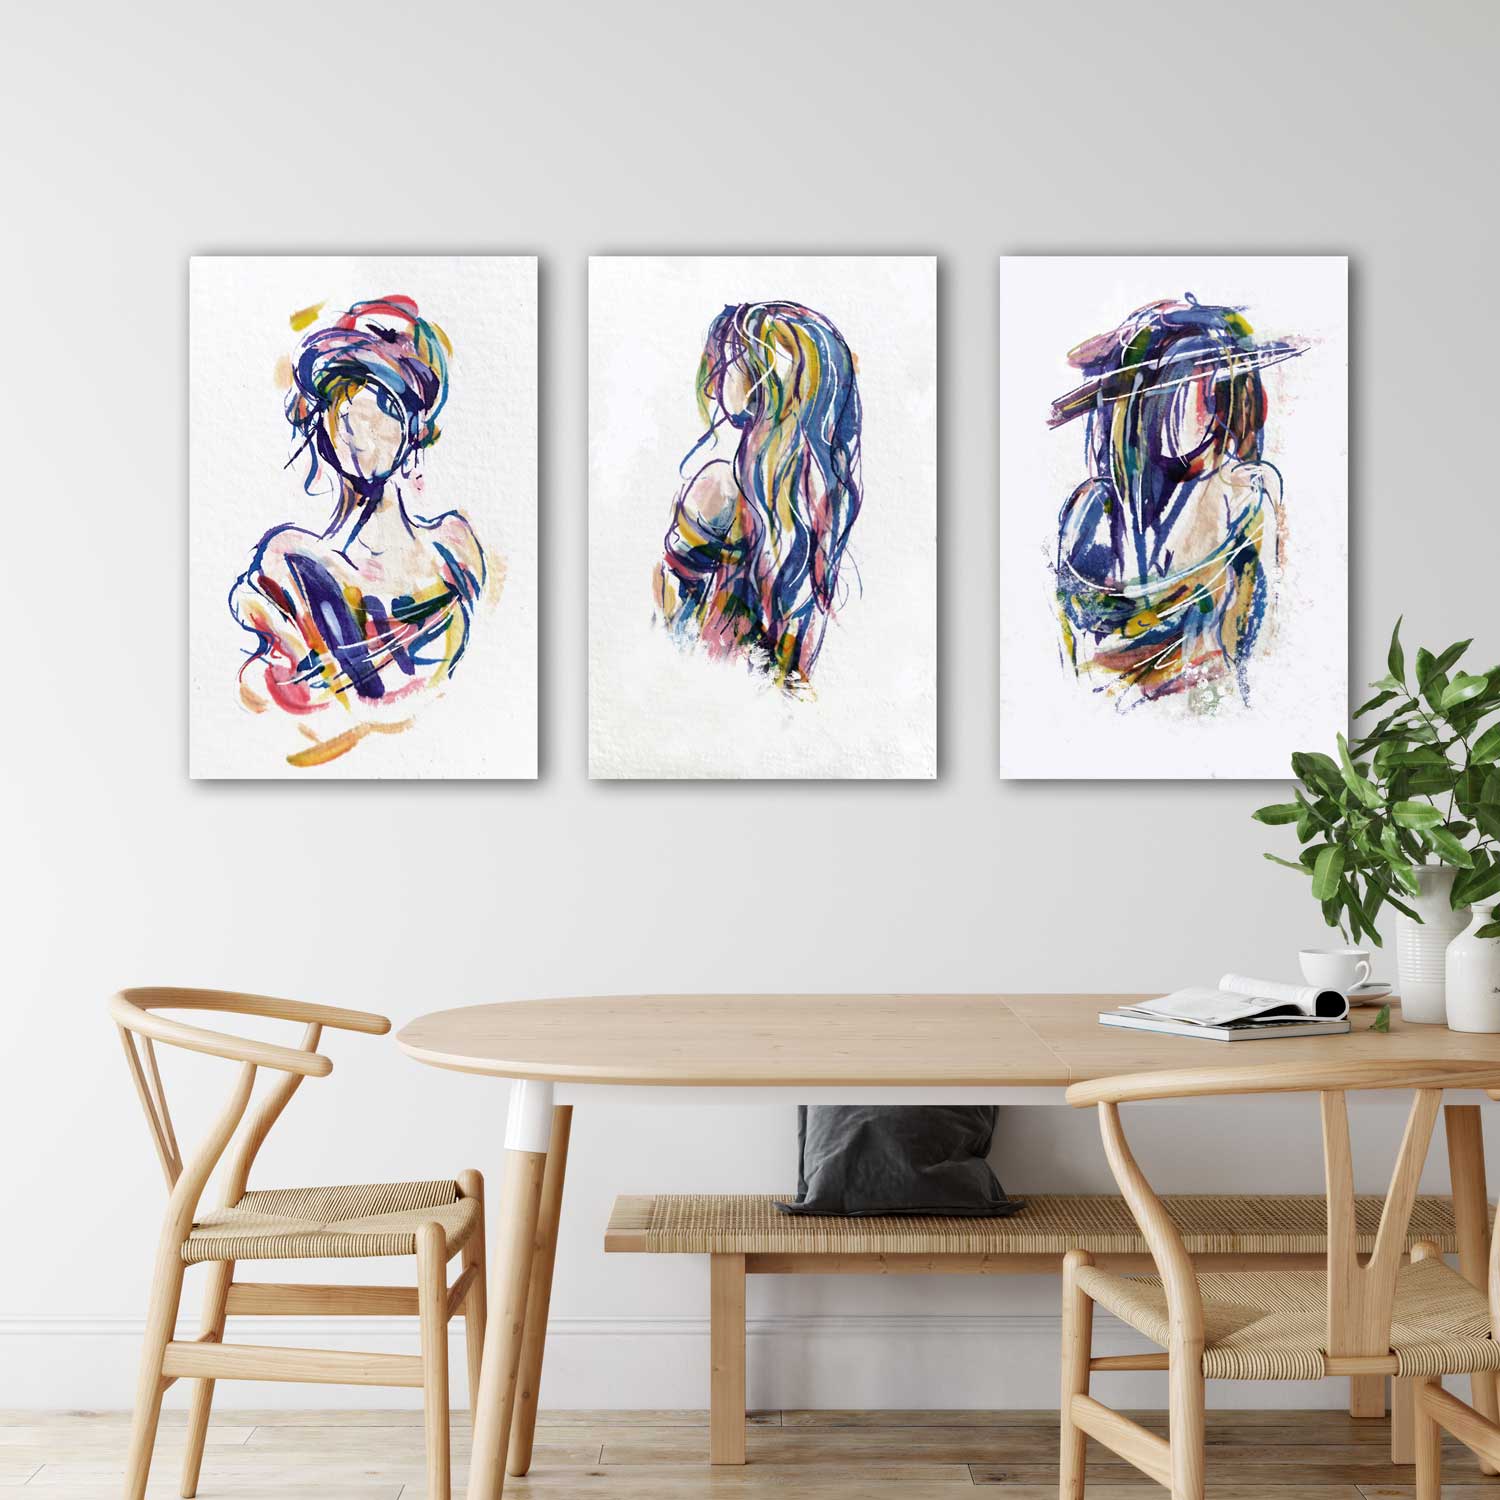 Drie moderne kleurige kunstwerken in dezelfde abstracte stijl